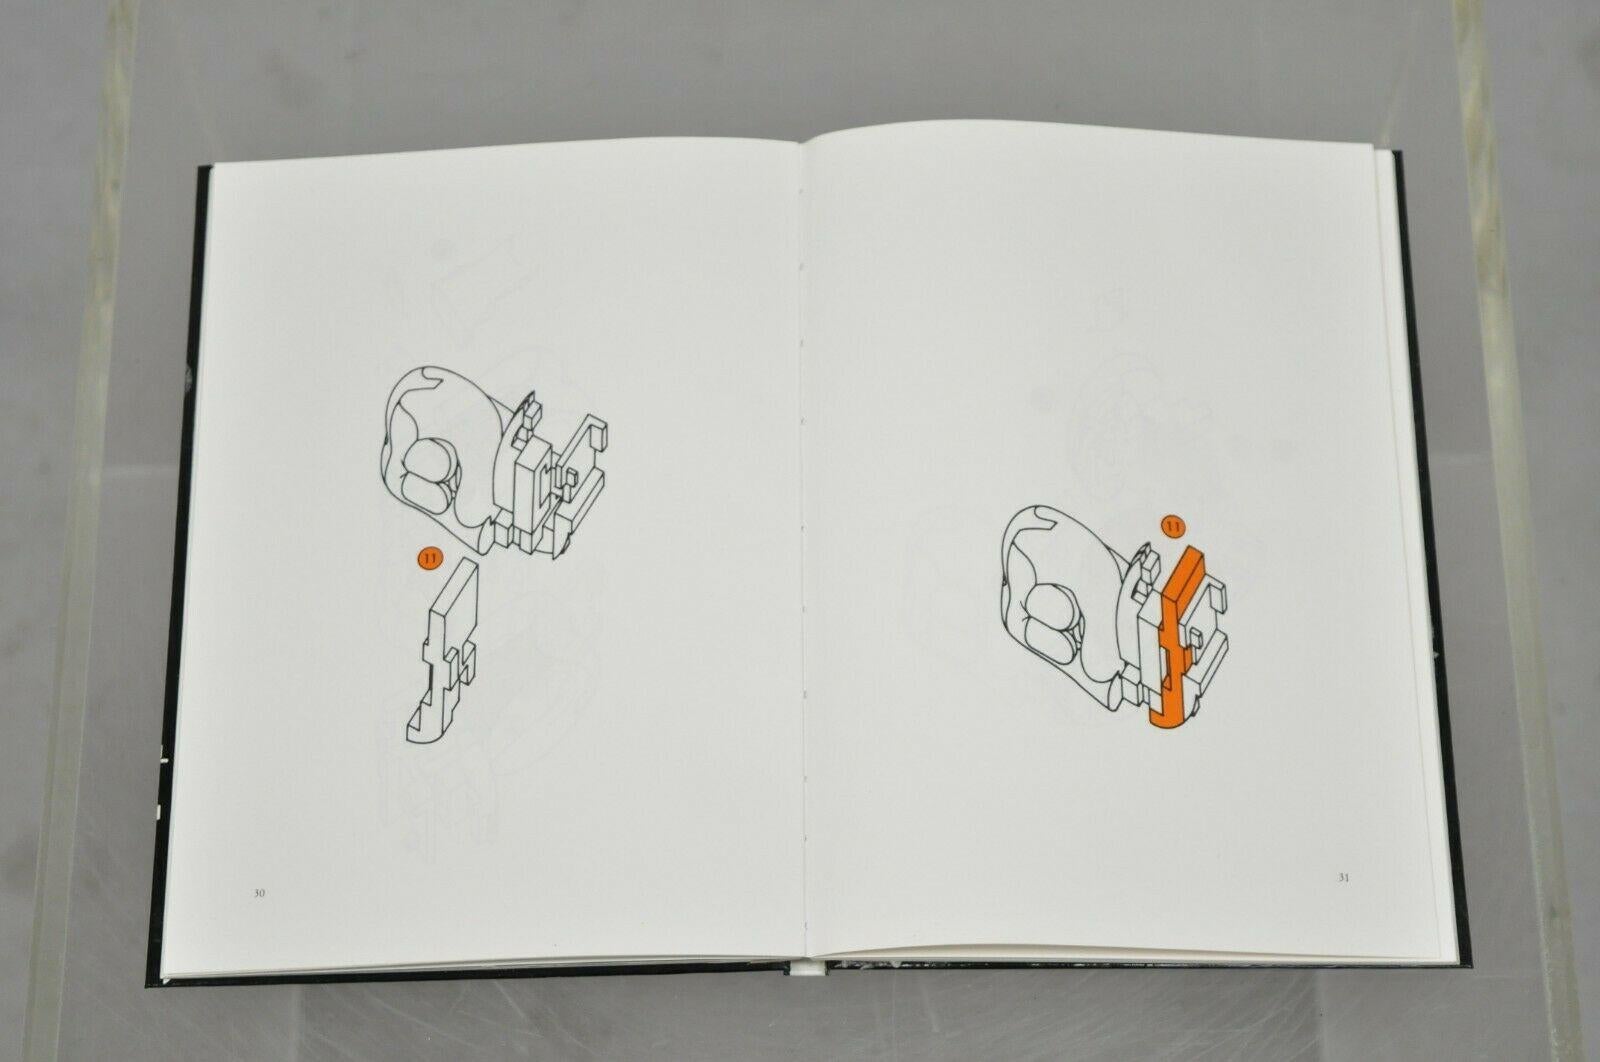 20th Century Miguel Berrocal La Mini Zoraida Nickel Plated Puzzle Sculpture Box and Book For Sale